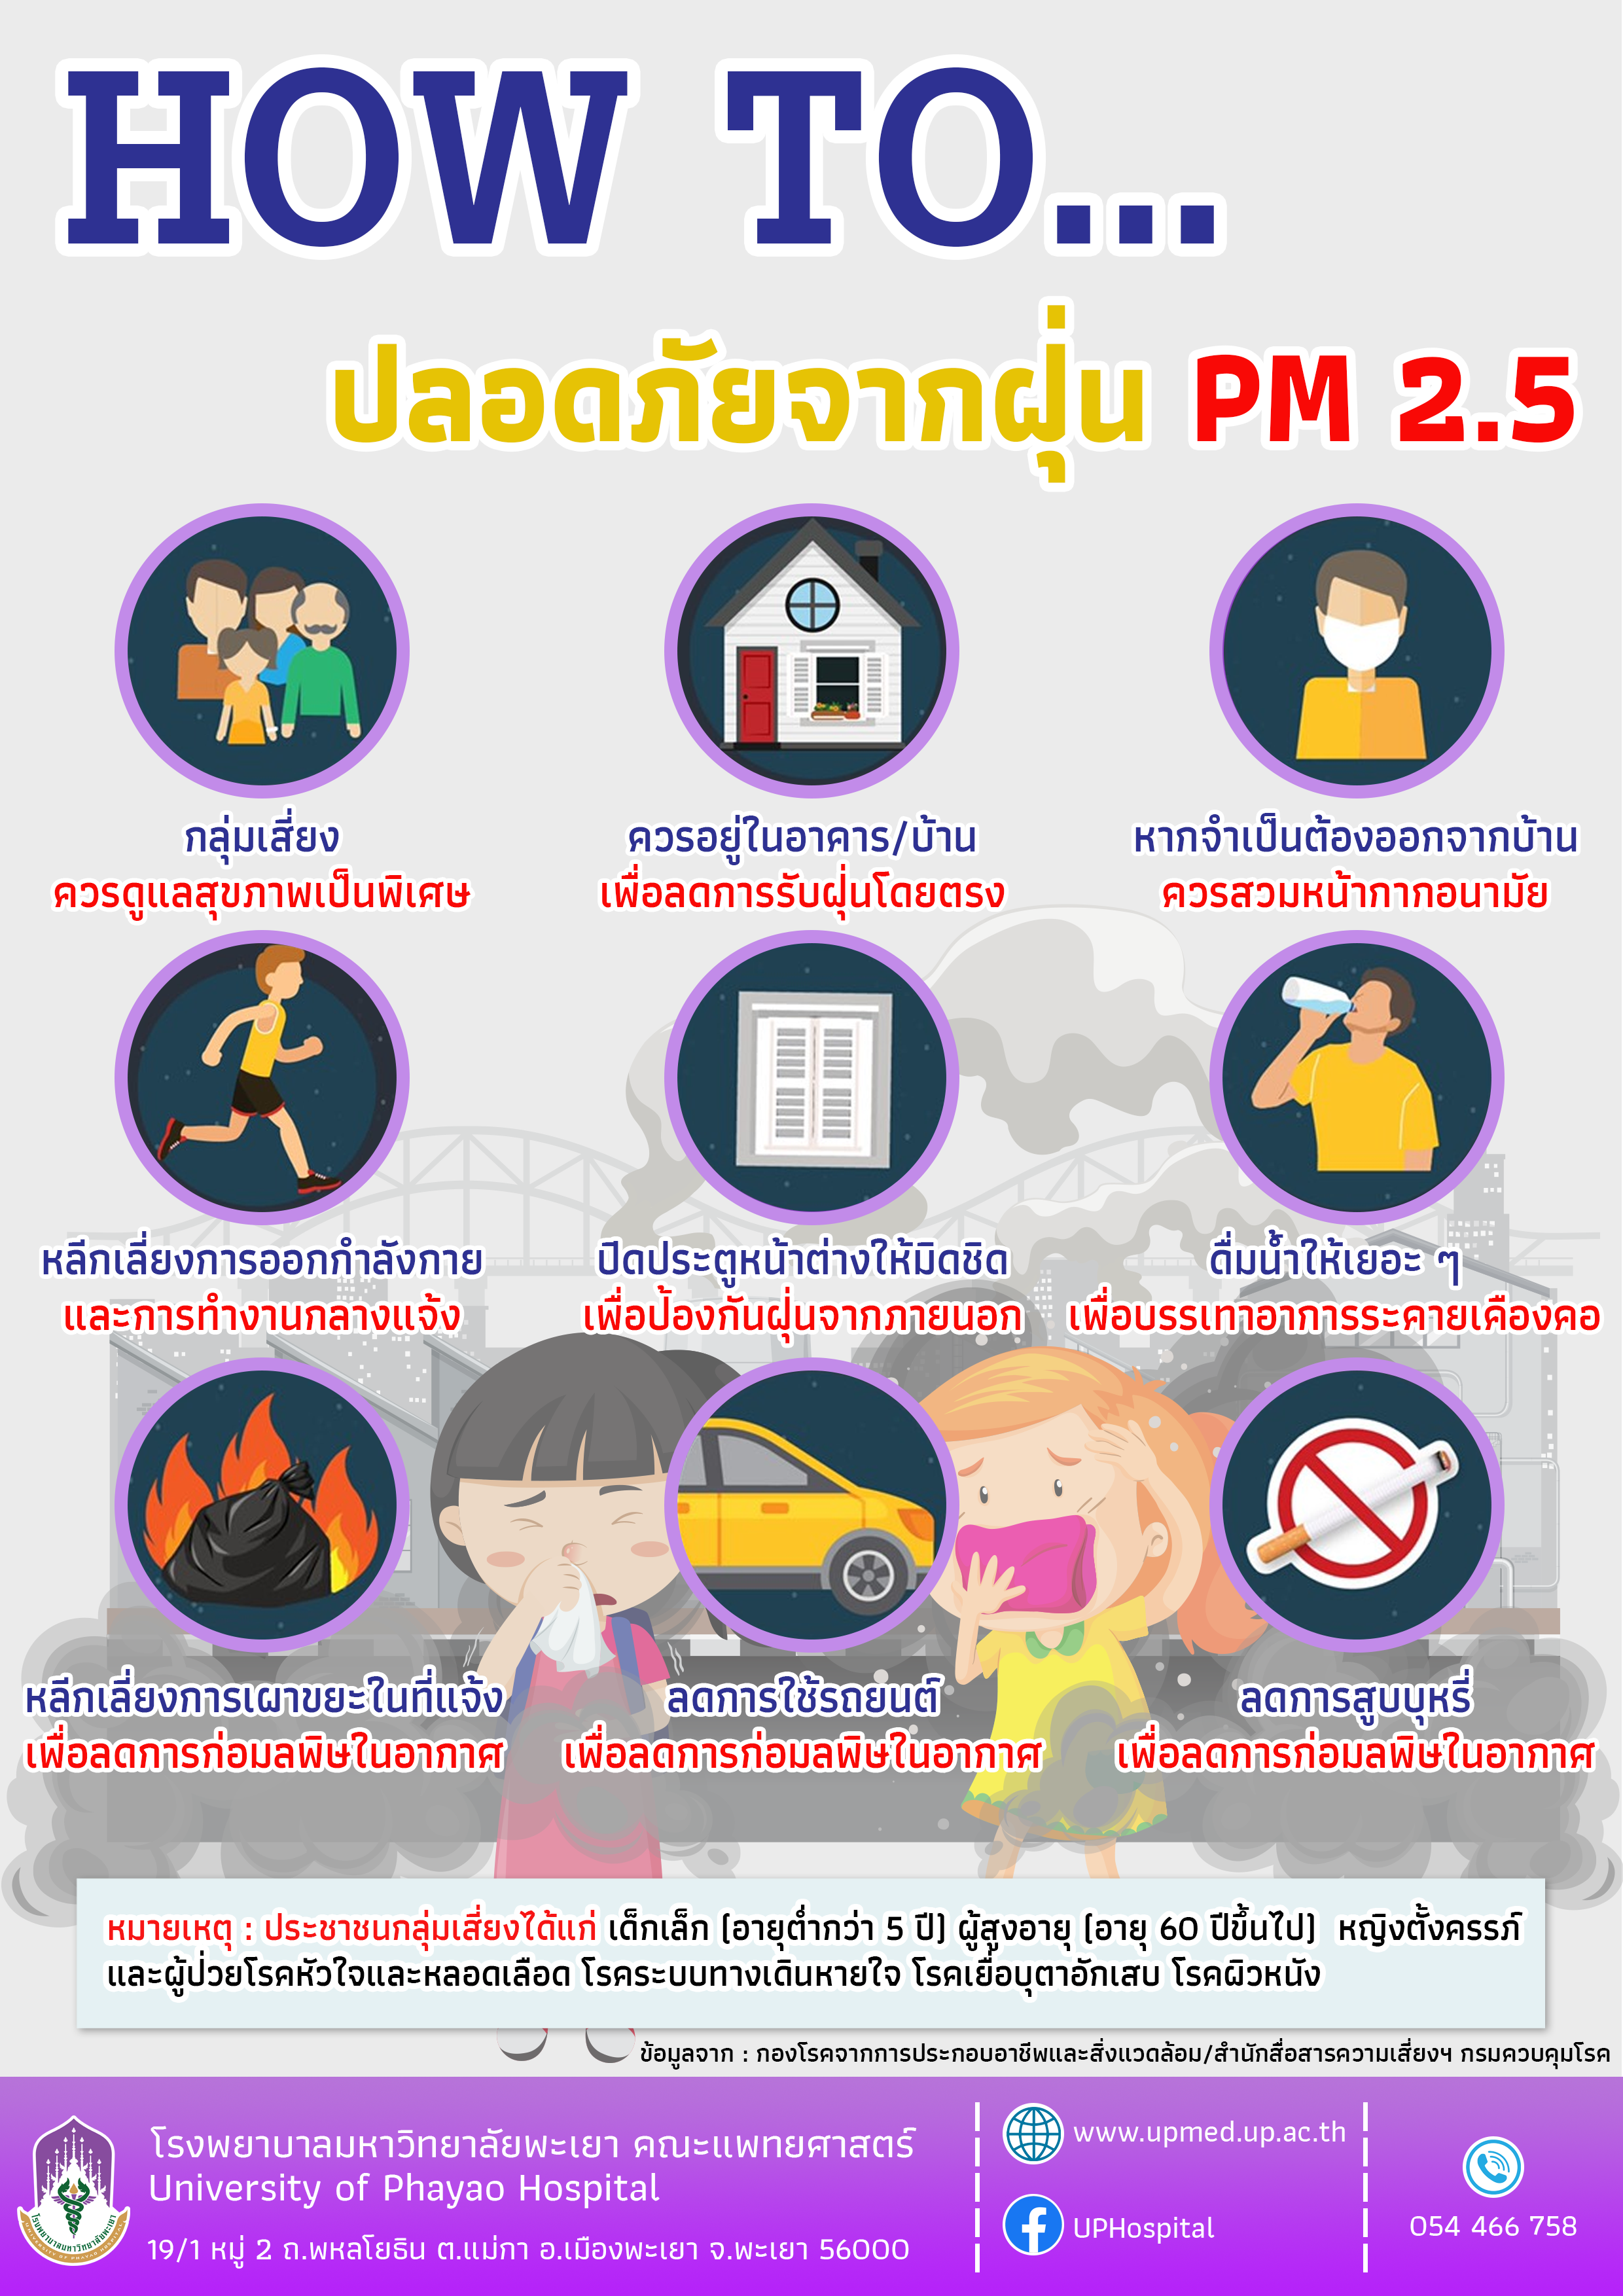 How To ปลอดภัยจากฝุ่น PM 2.5